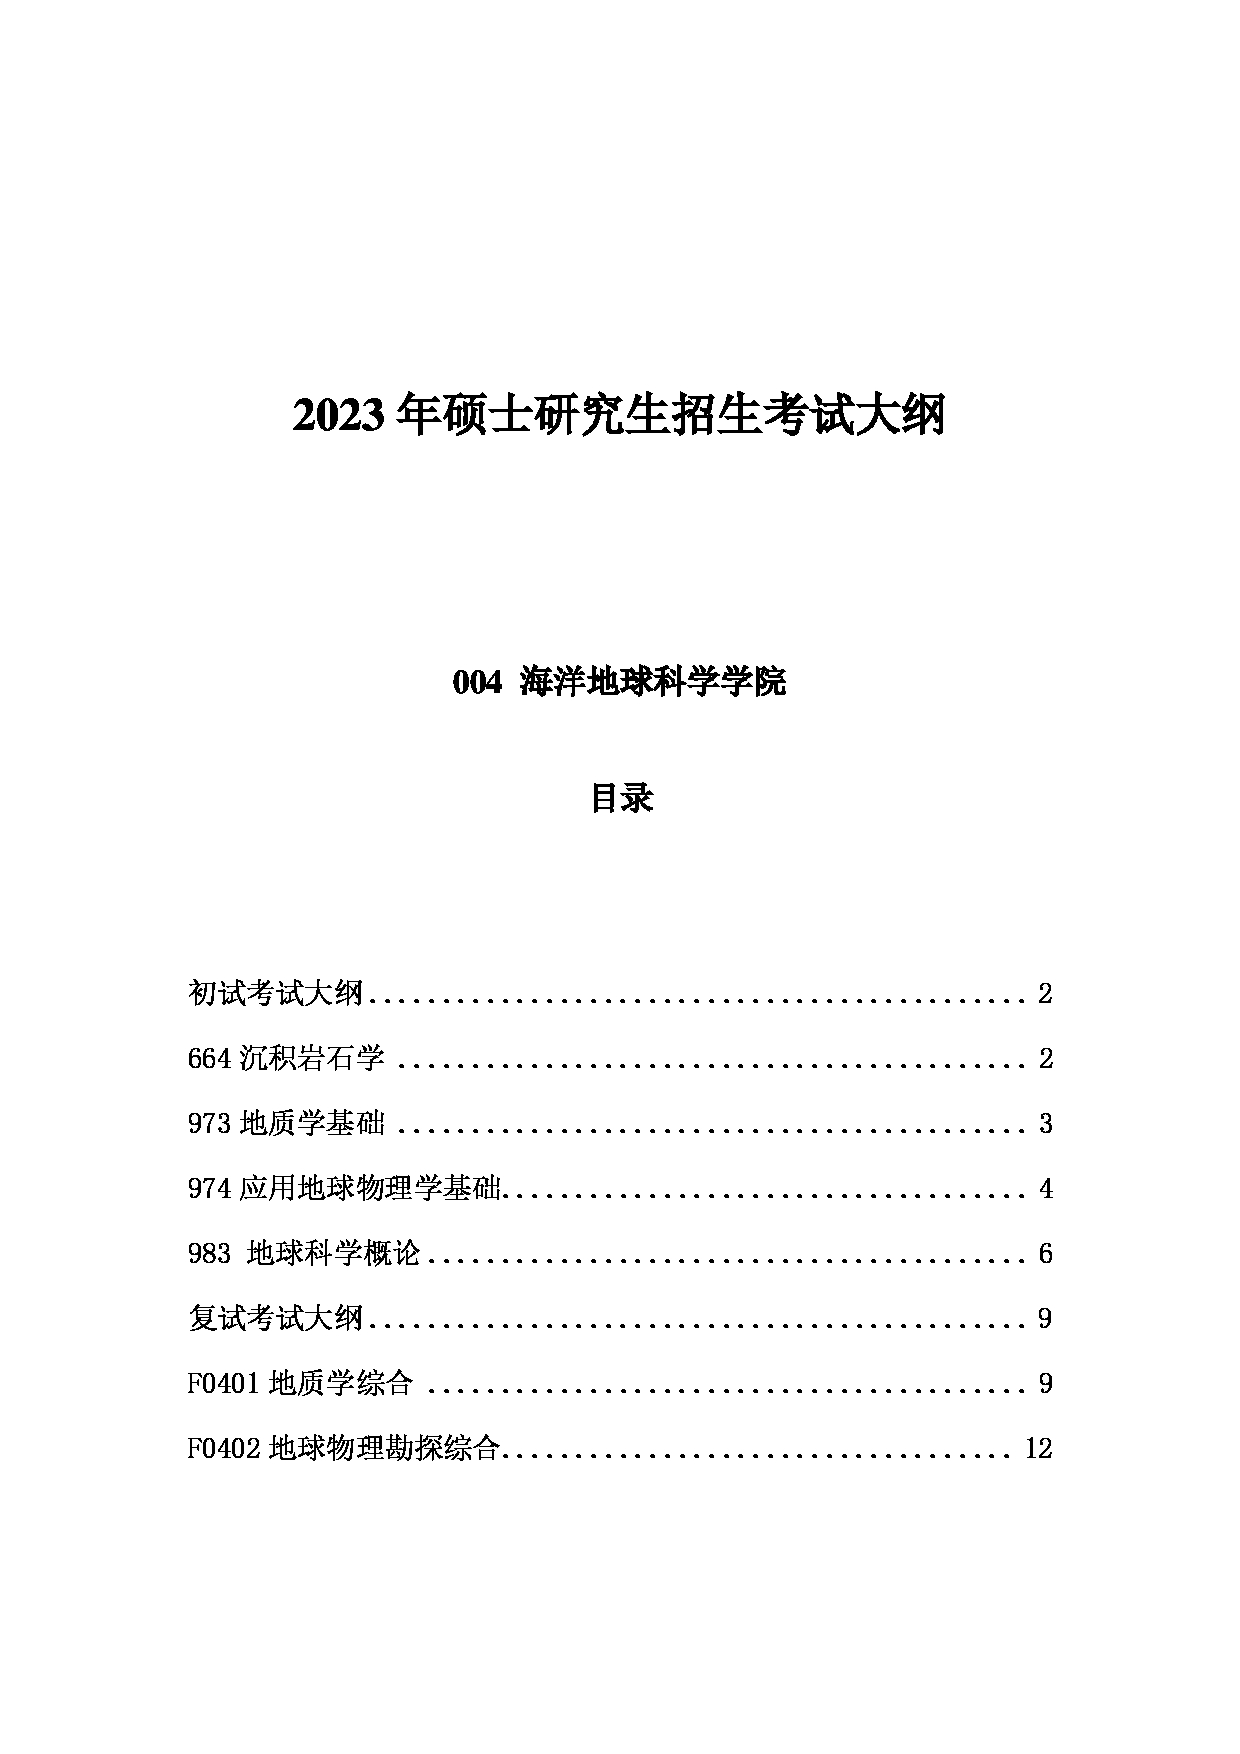 2023考研大纲：中国海洋大学2023年考研 004海洋地球科学学院 考试大纲第1页